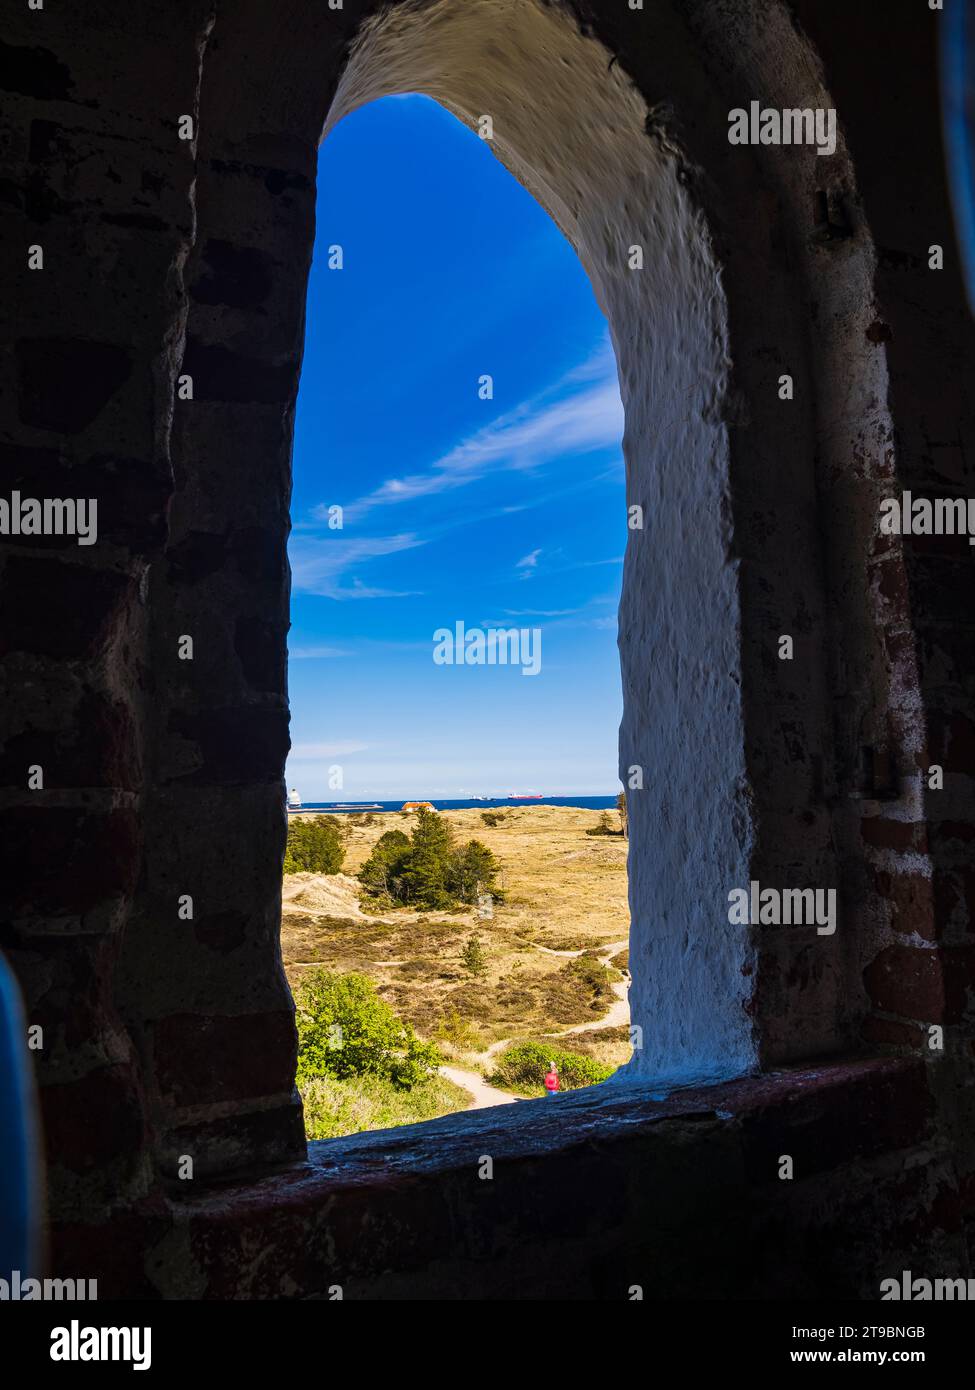 Ciel bleu et côte vu de la fenêtre dans le bâtiment en pierre Banque D'Images